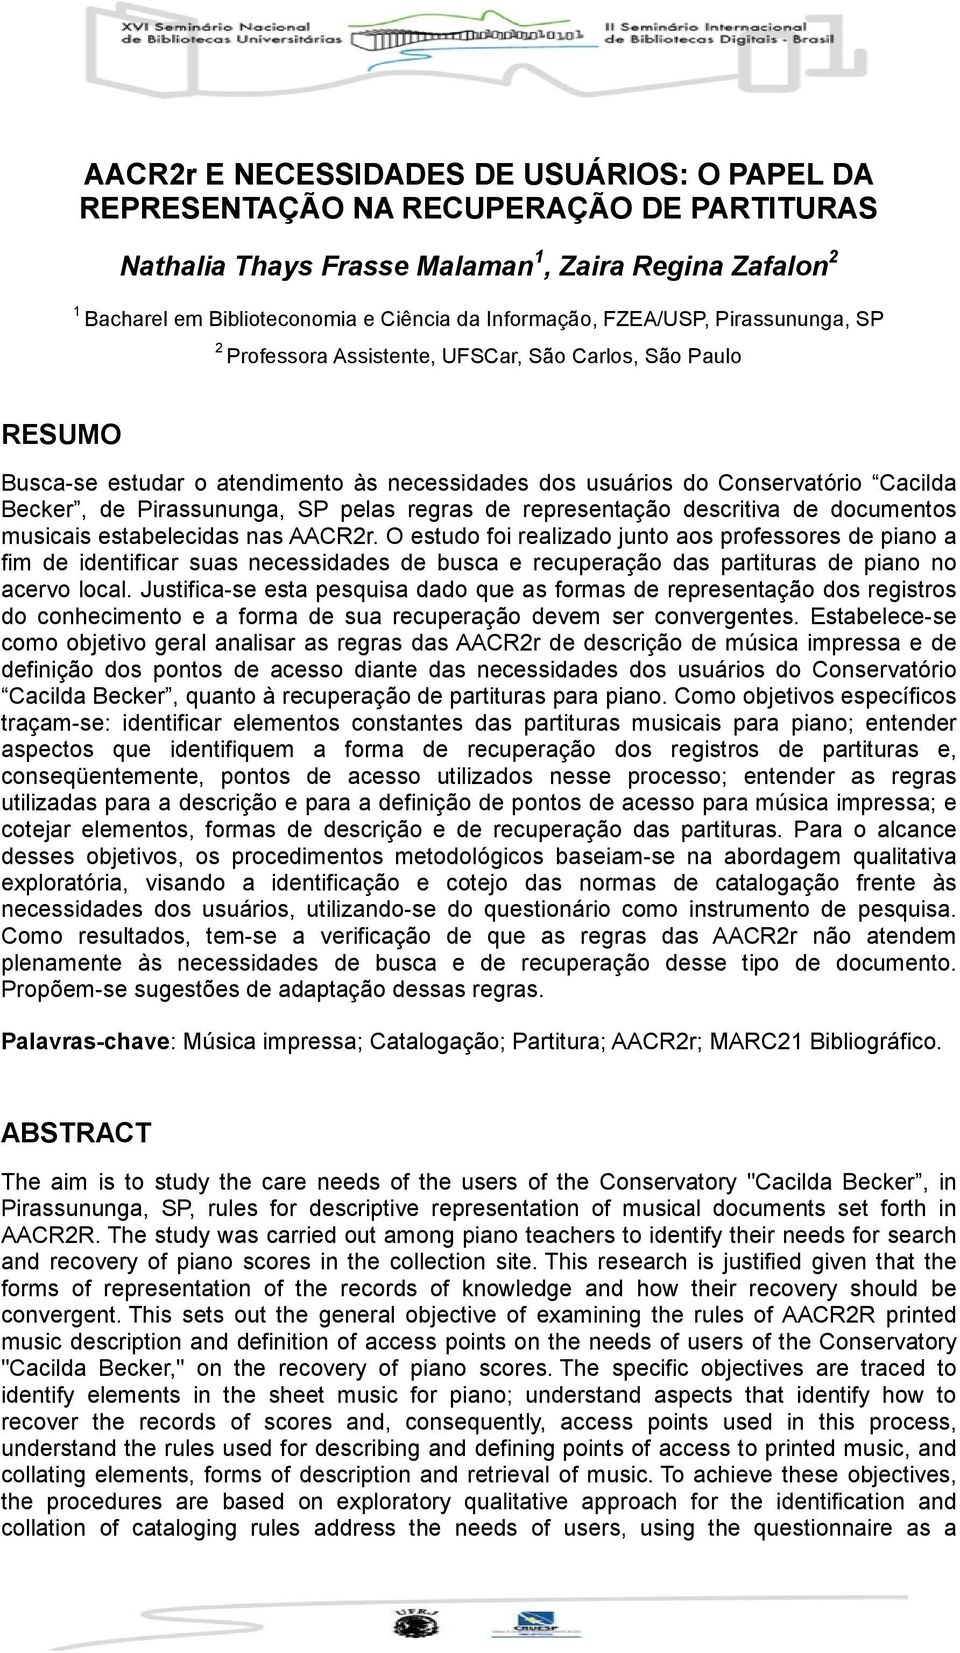 SP pelas regras de representação descritiva de documentos musicais estabelecidas nas AACR2r.